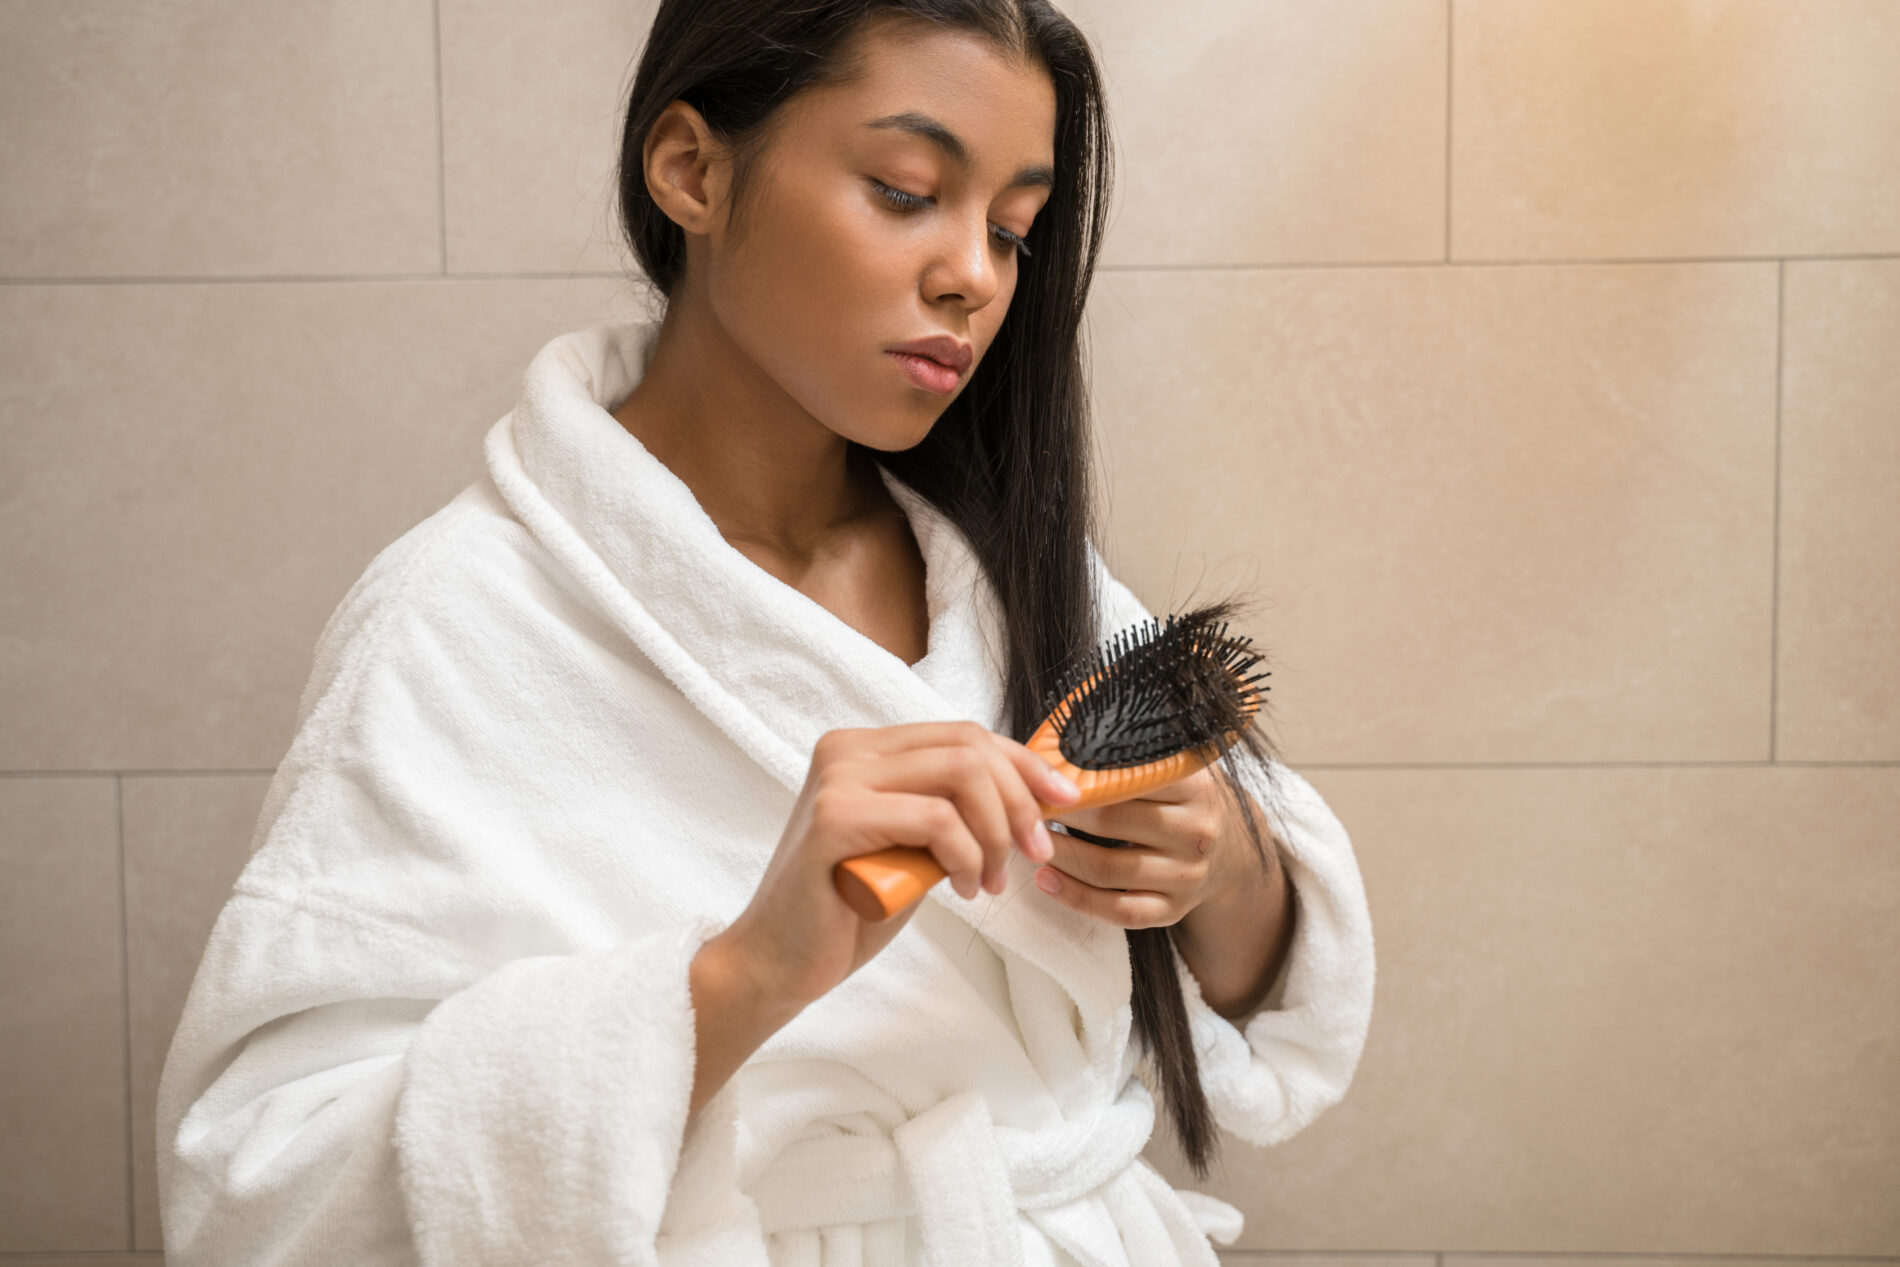 Em um banheiro está uma mulher negra, vestindo roupão branco, e penteando as pontas dos cabelos castanhos escuros e lisos, com uma escova cor de madeira clara; representando a reestruturação capilar.